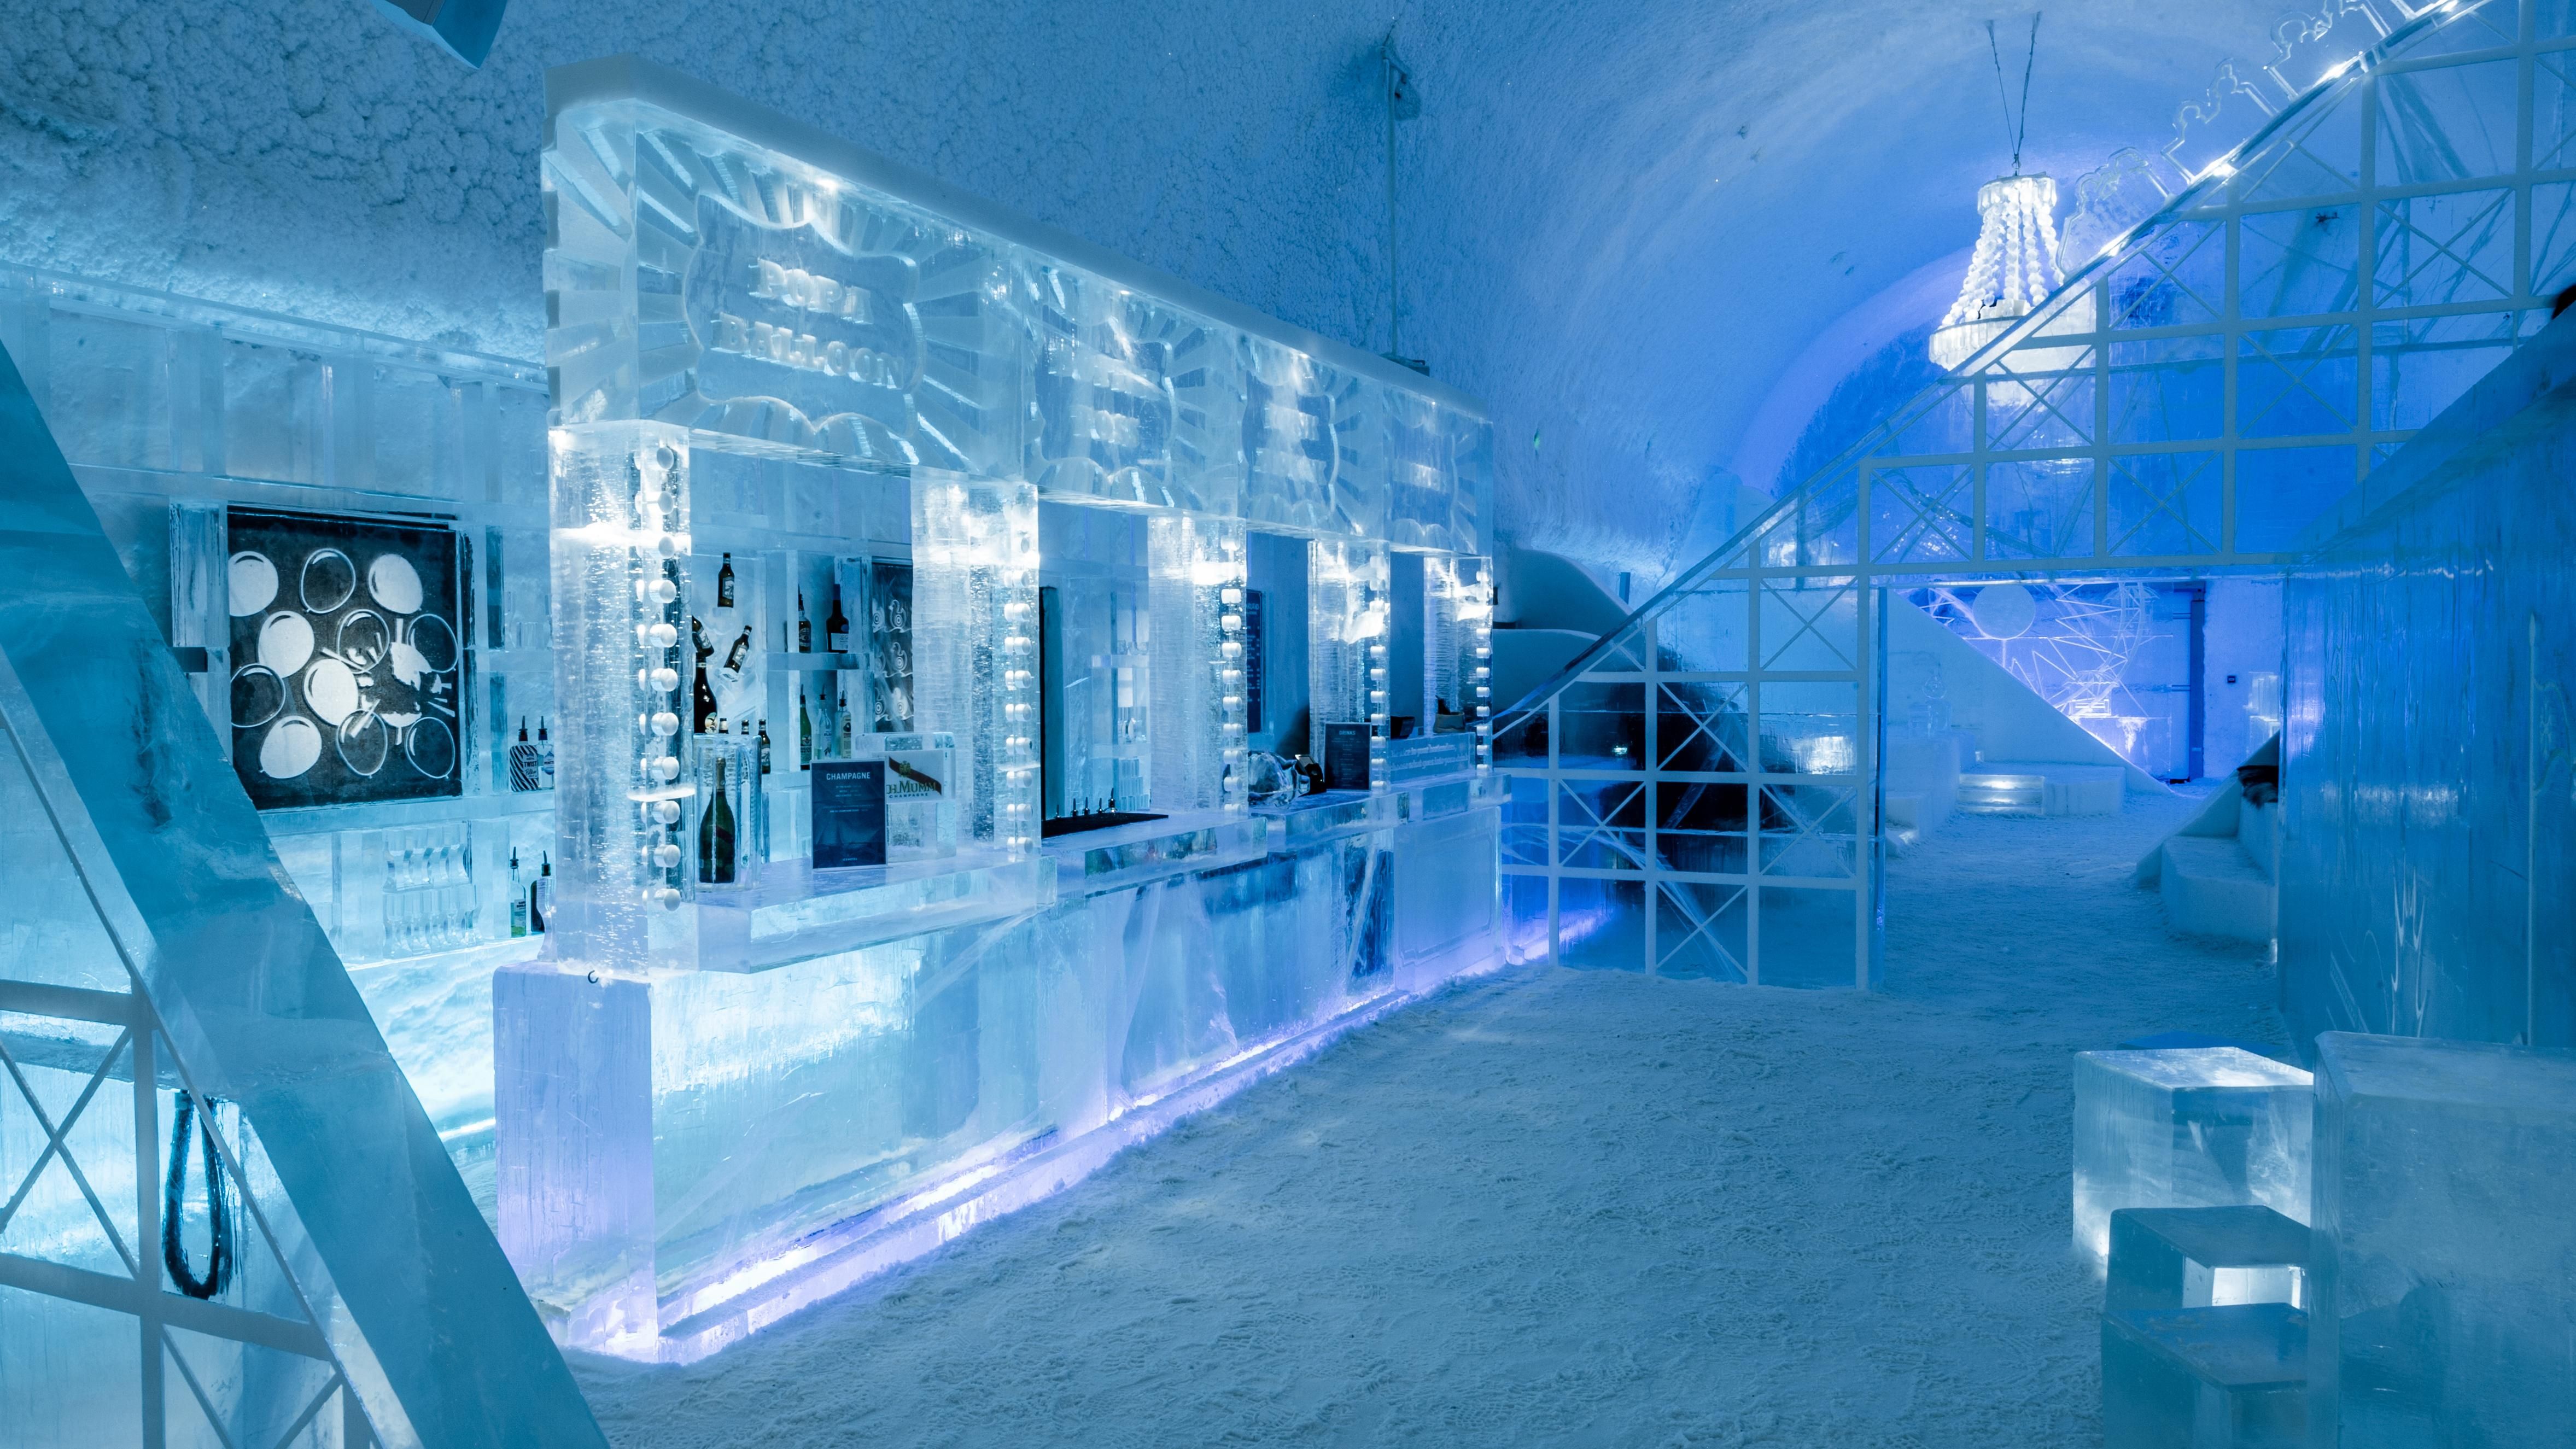 Ледяной отель приглашает на ночевку – фото номеров из сплошного льда